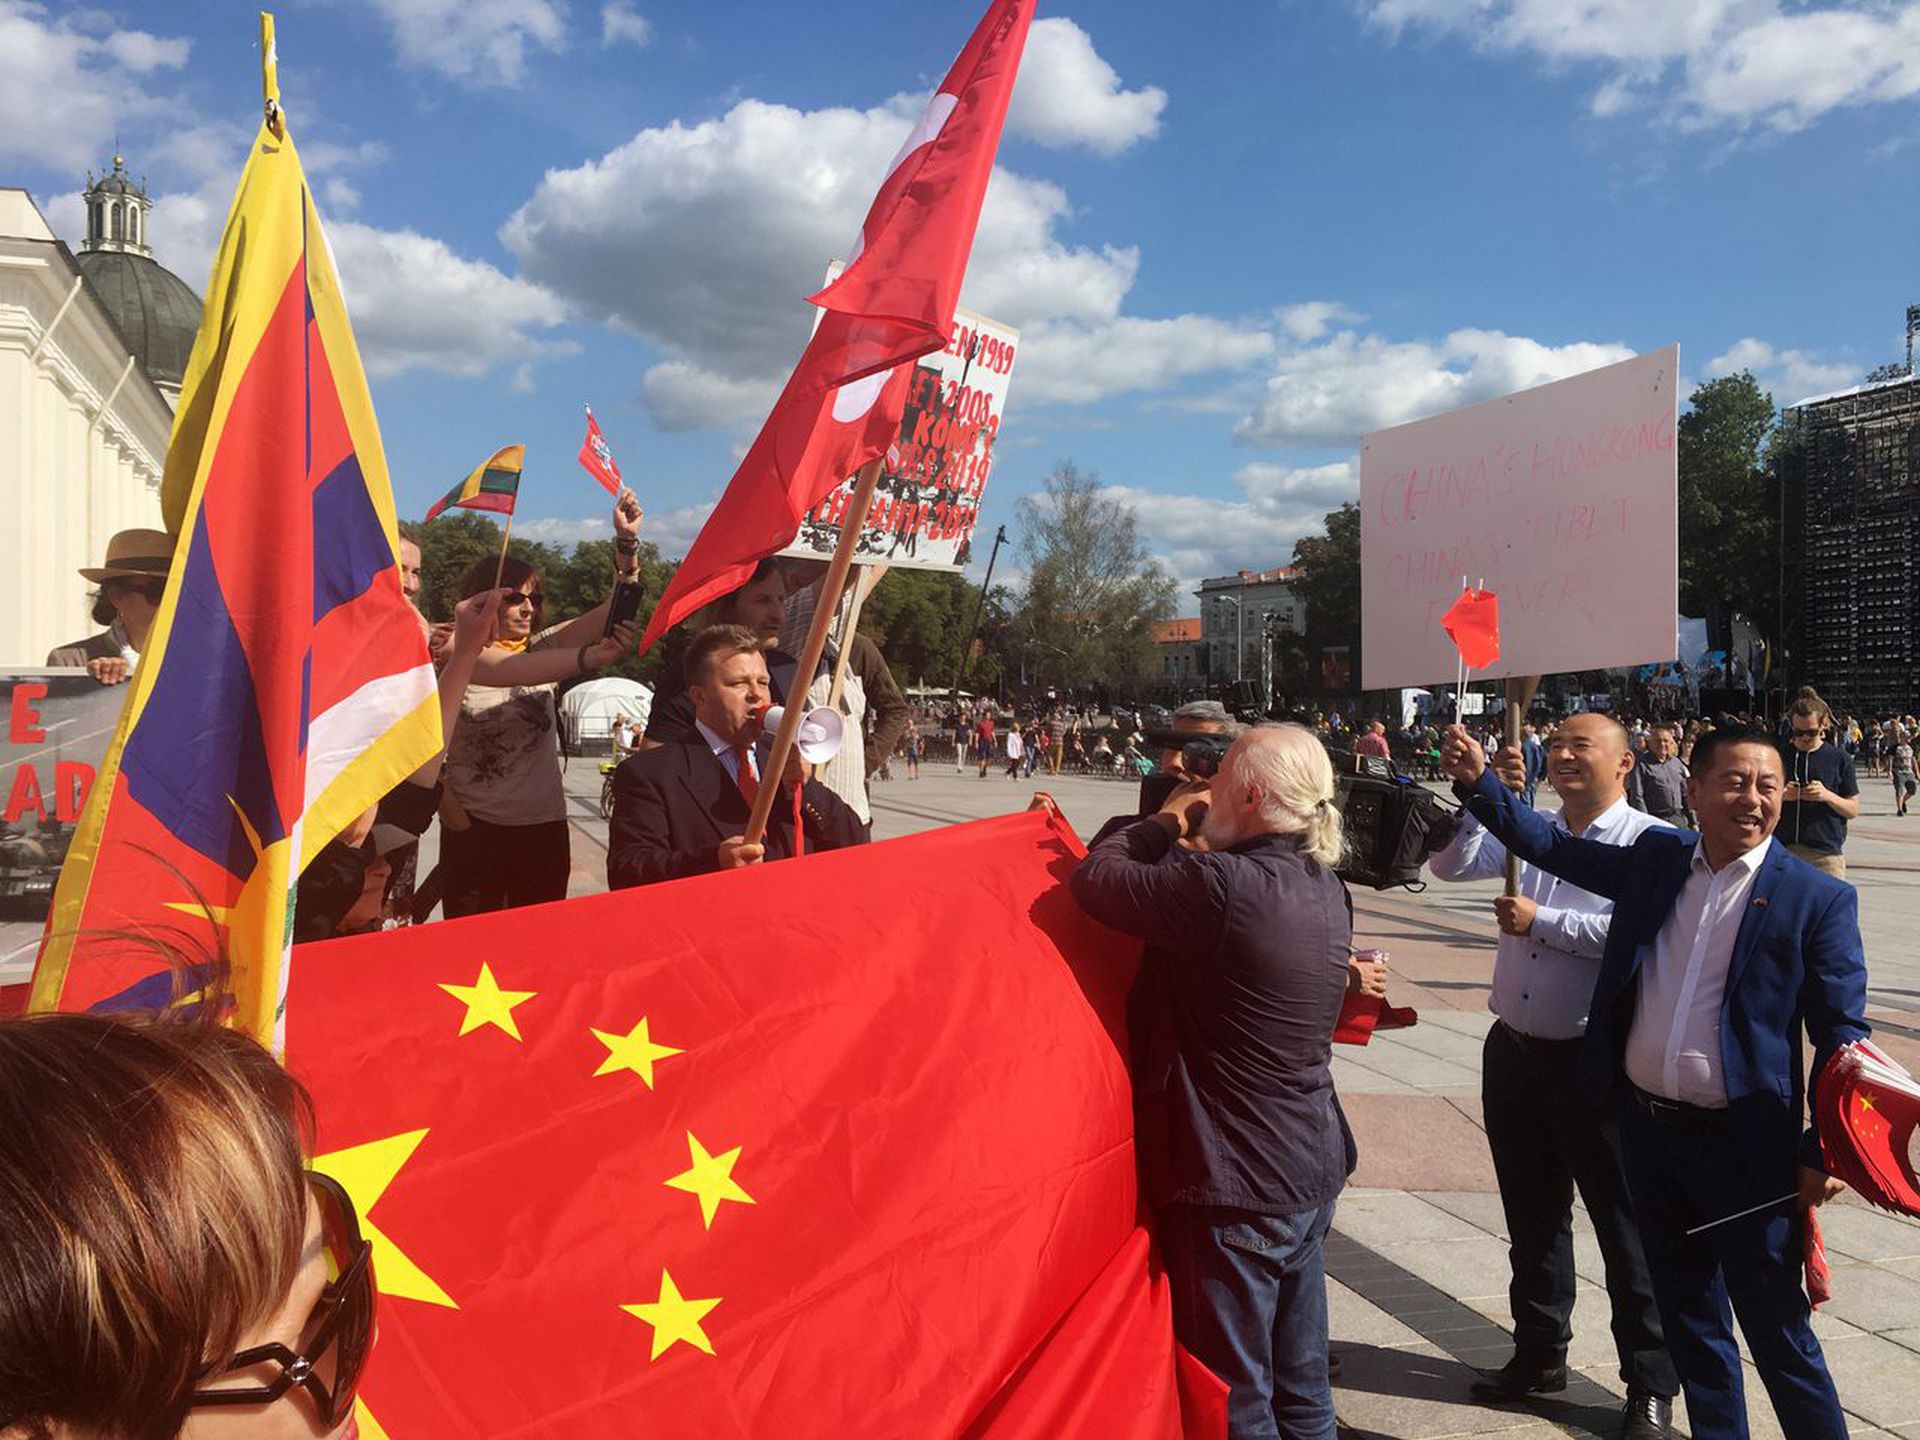 立陶宛執政聯盟表明支持台灣爭取自由 | Now 新聞